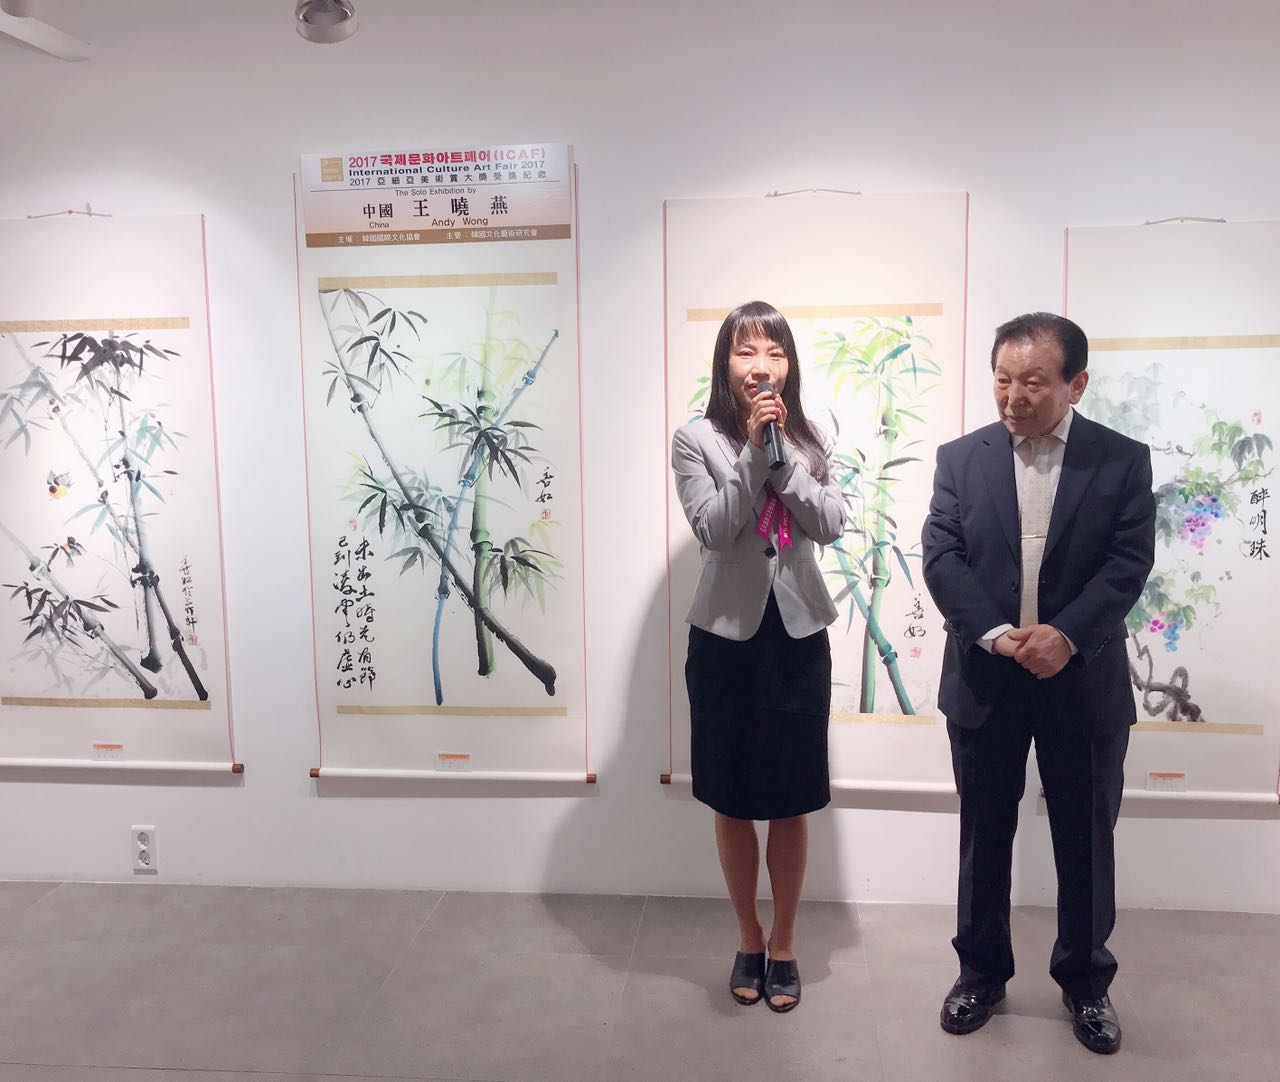 王晓燕在介绍参展作品 ANDY Wong is introducing her paintings to the show by people who have been visiting